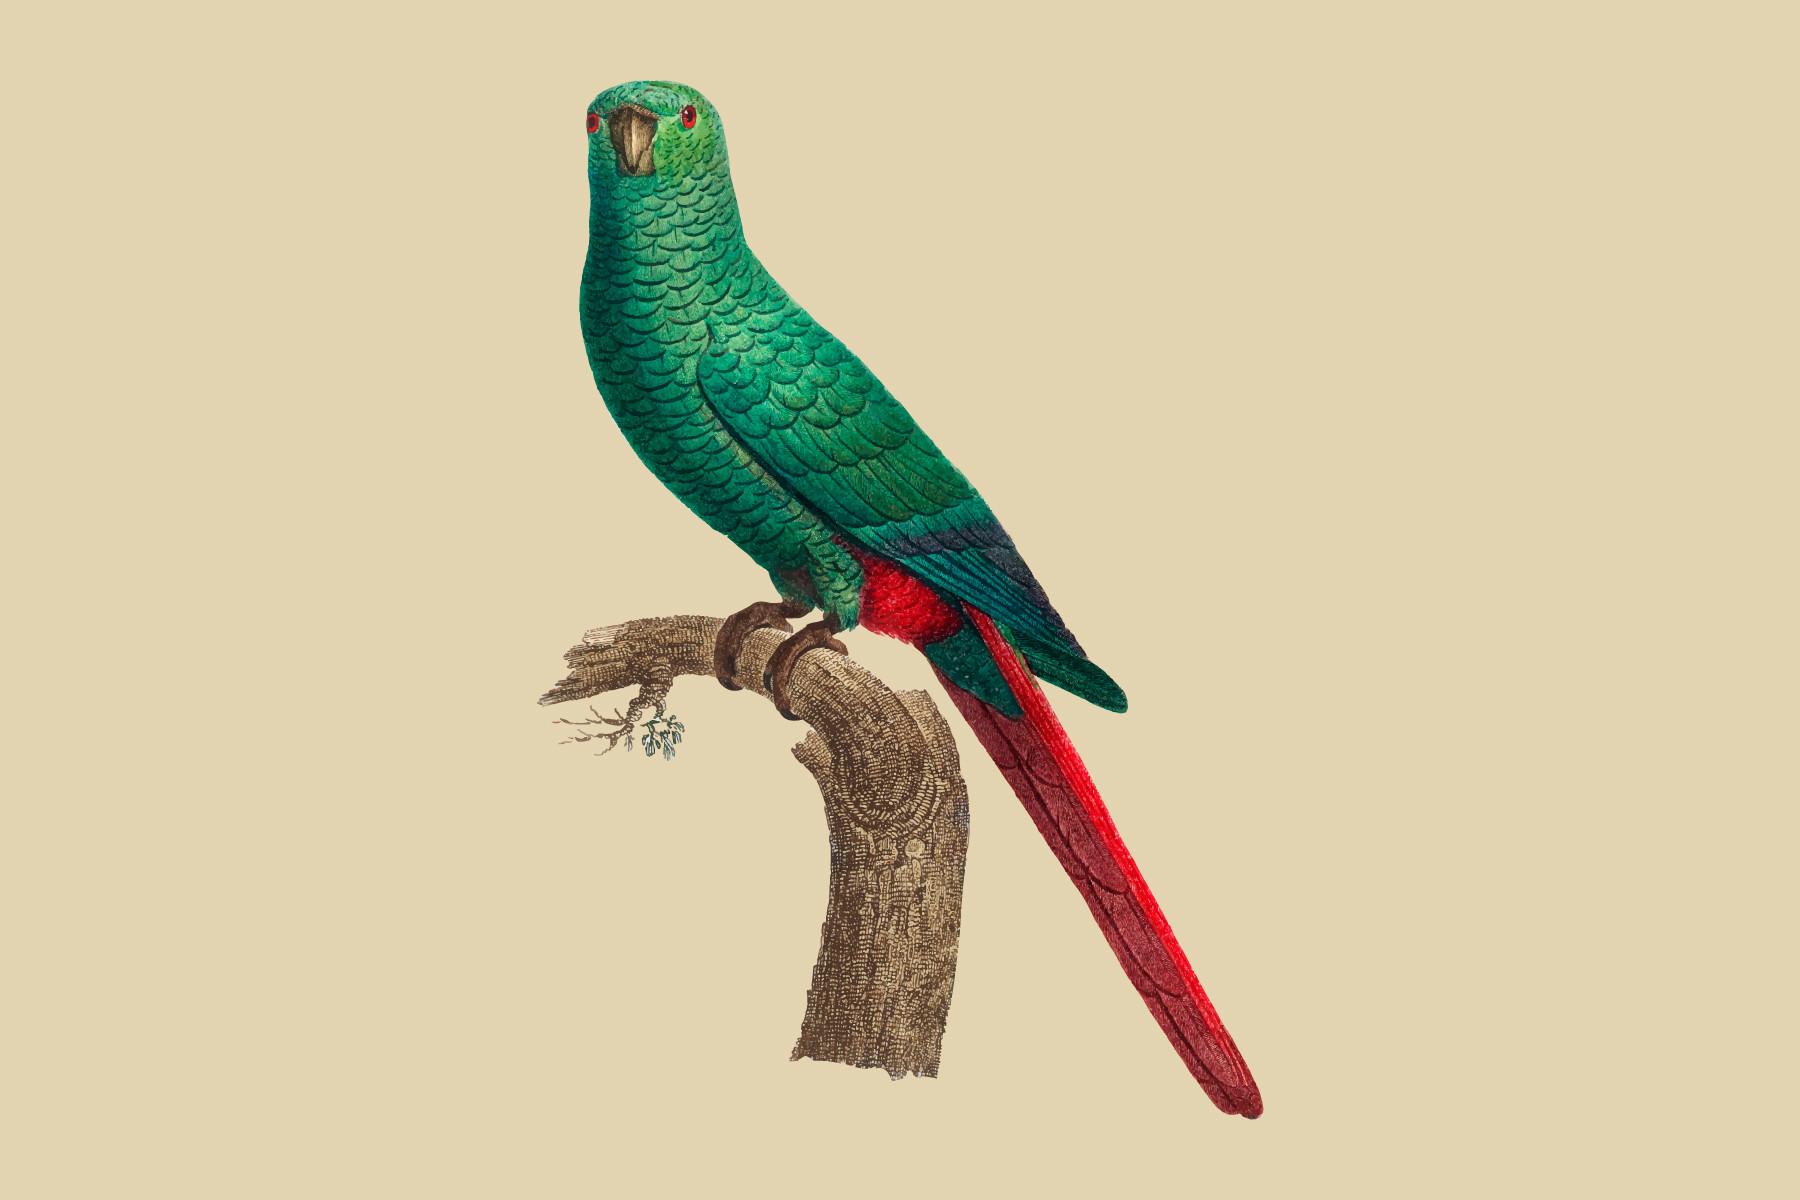 The Emerald Parakeet Illustration